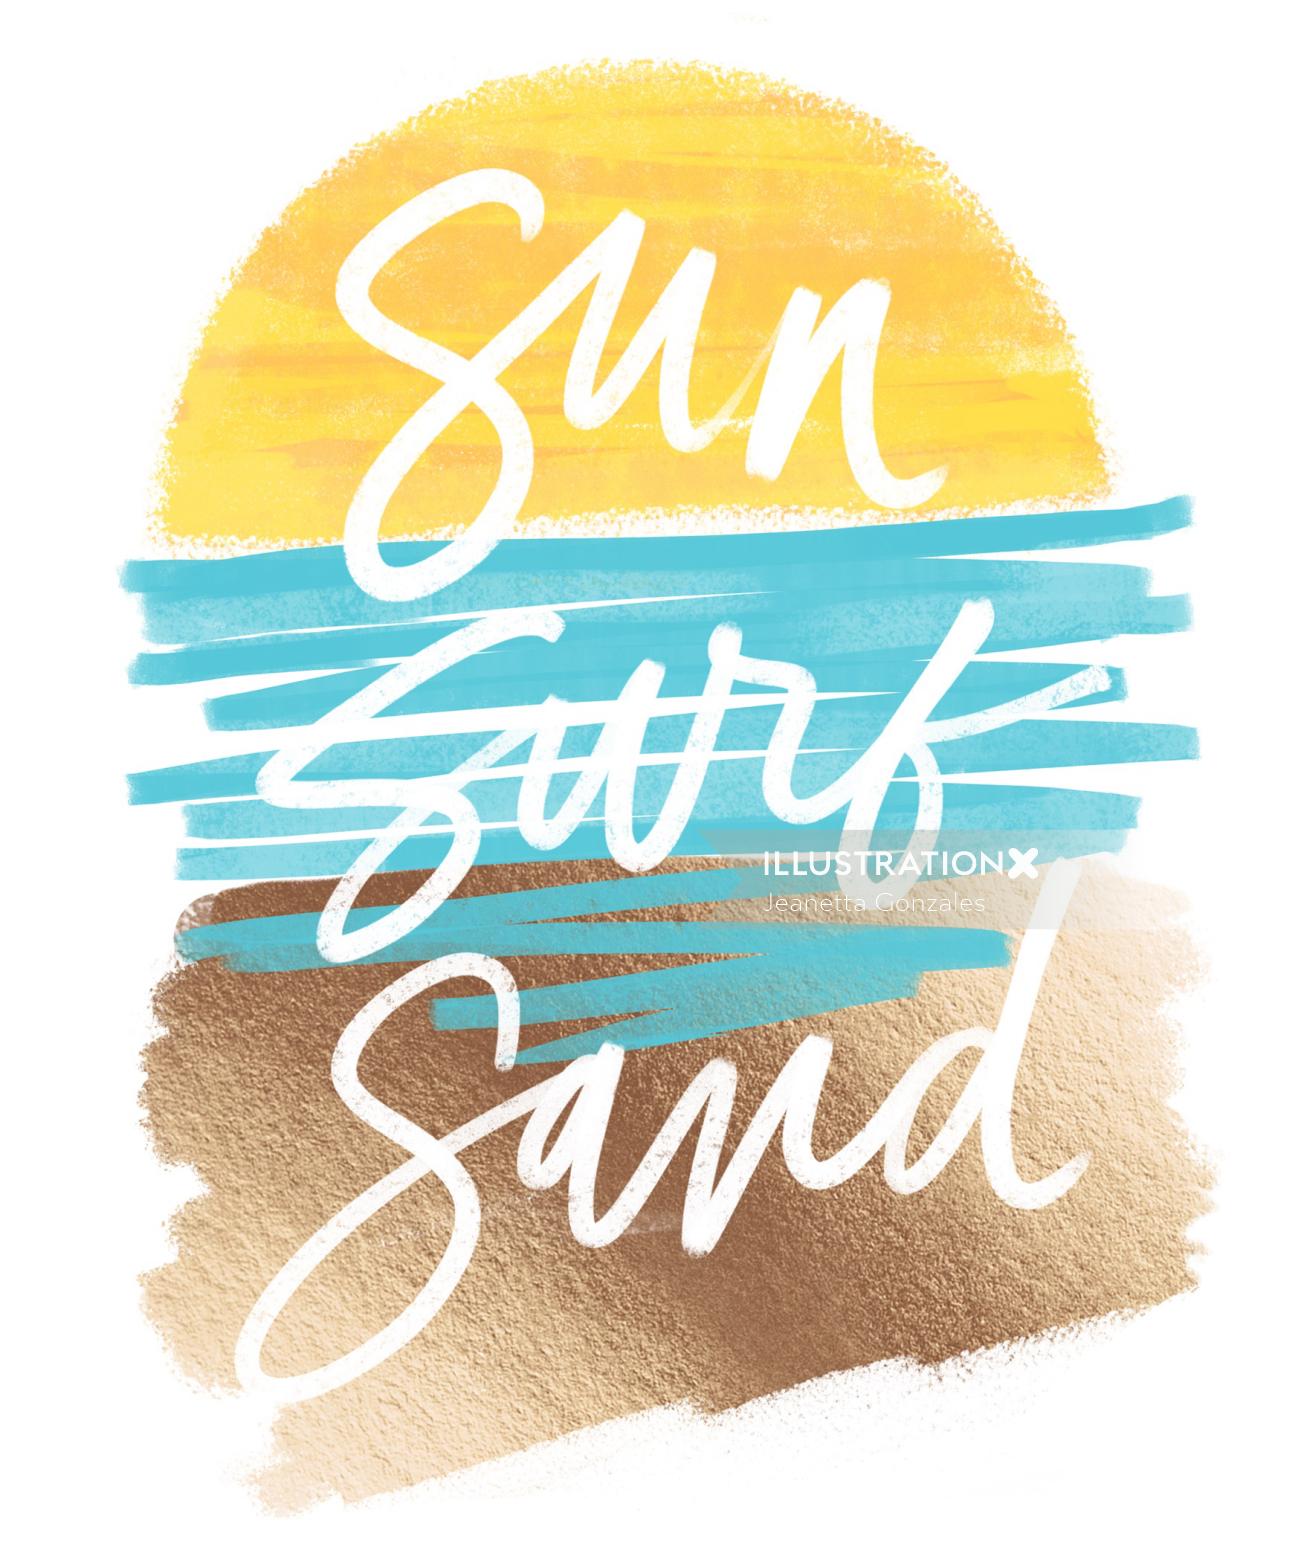 Art de la typographie du sable surt soleil